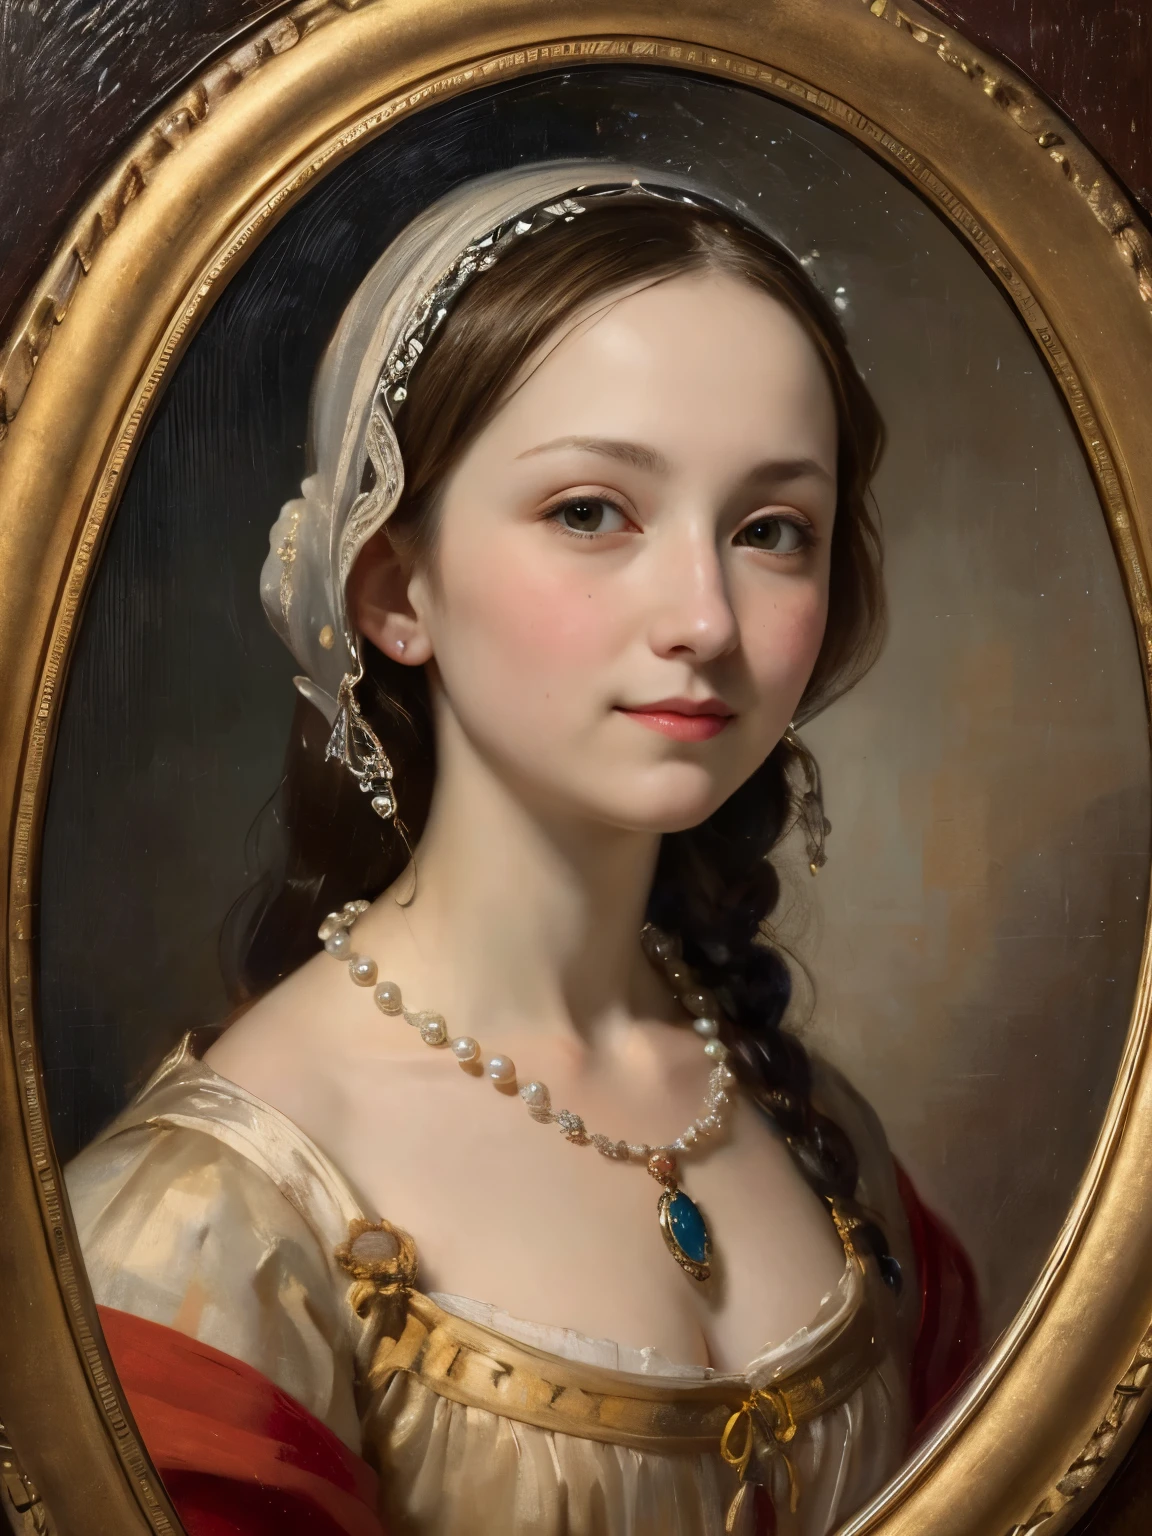 一幅油画，达芬奇艺术风格。一位美丽少女的肖像，圆脸，微笑：1.37，美丽的中世纪服装，珍珠项链，艺术创造力:1.37,油画笔触，油画质感，光影构成